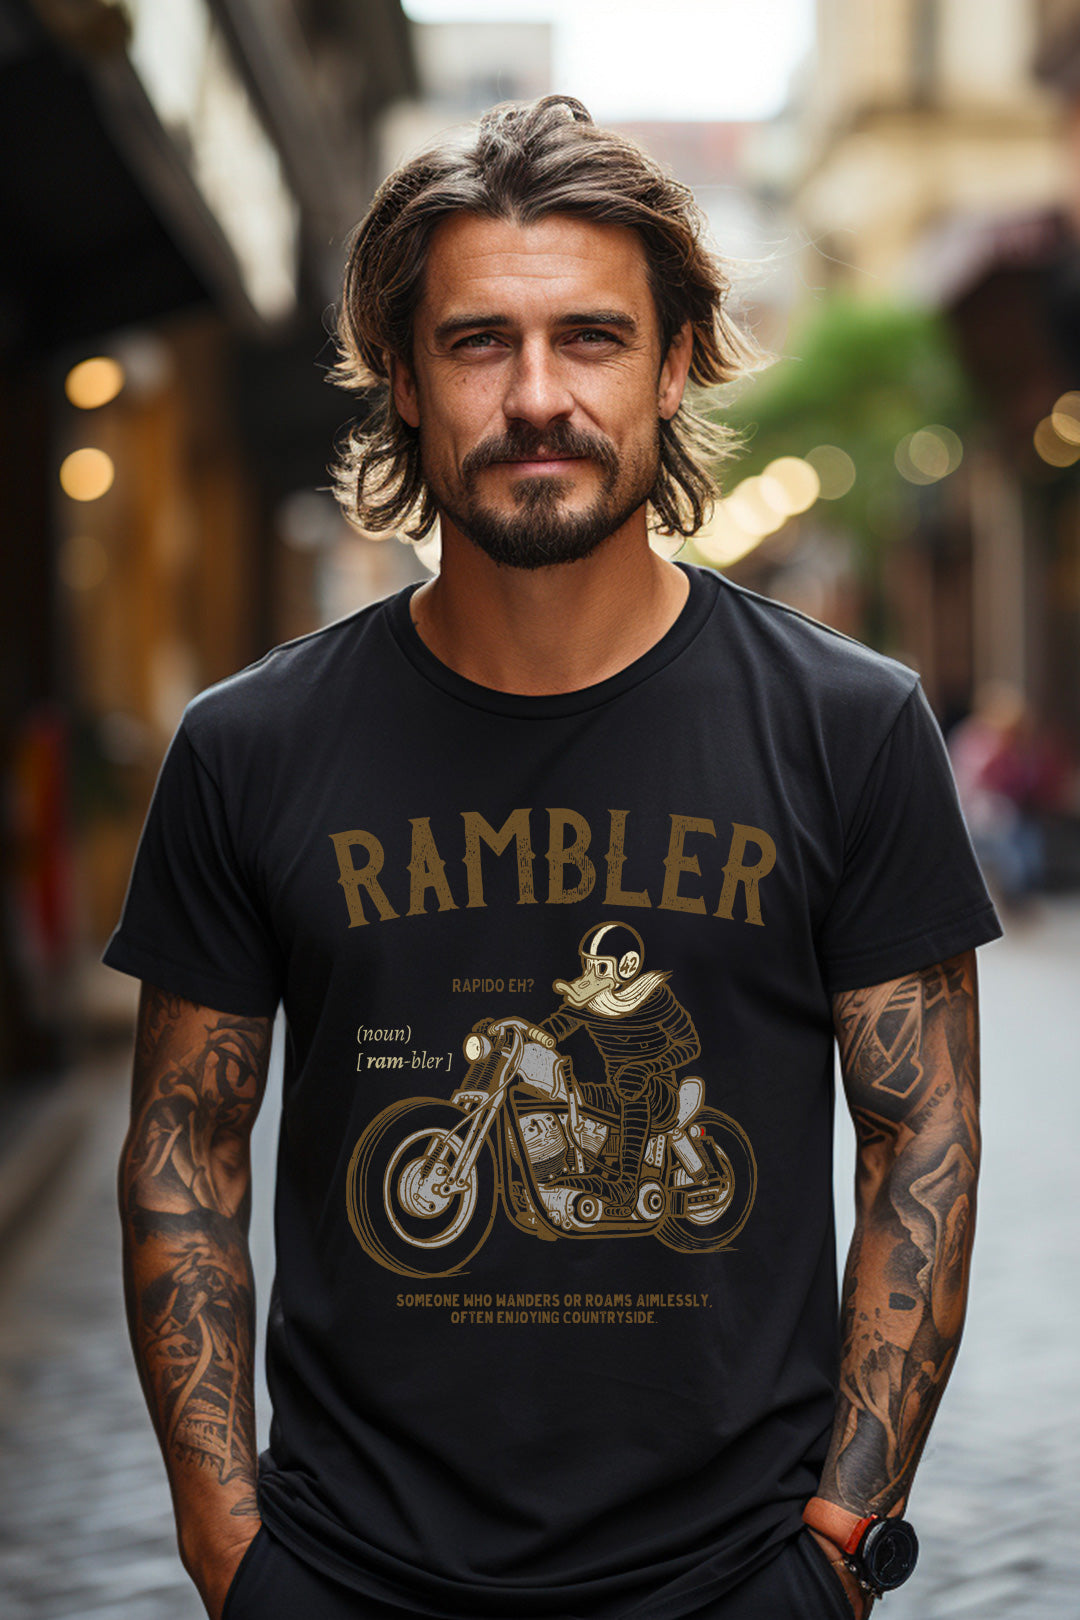 Rambler Biker T-shirt Hiking Countryside Shirt Vintage Motorcycle Tourer Shirt Traveling Journey Tee Bobber Biker Shirt Harley Davidson Tee